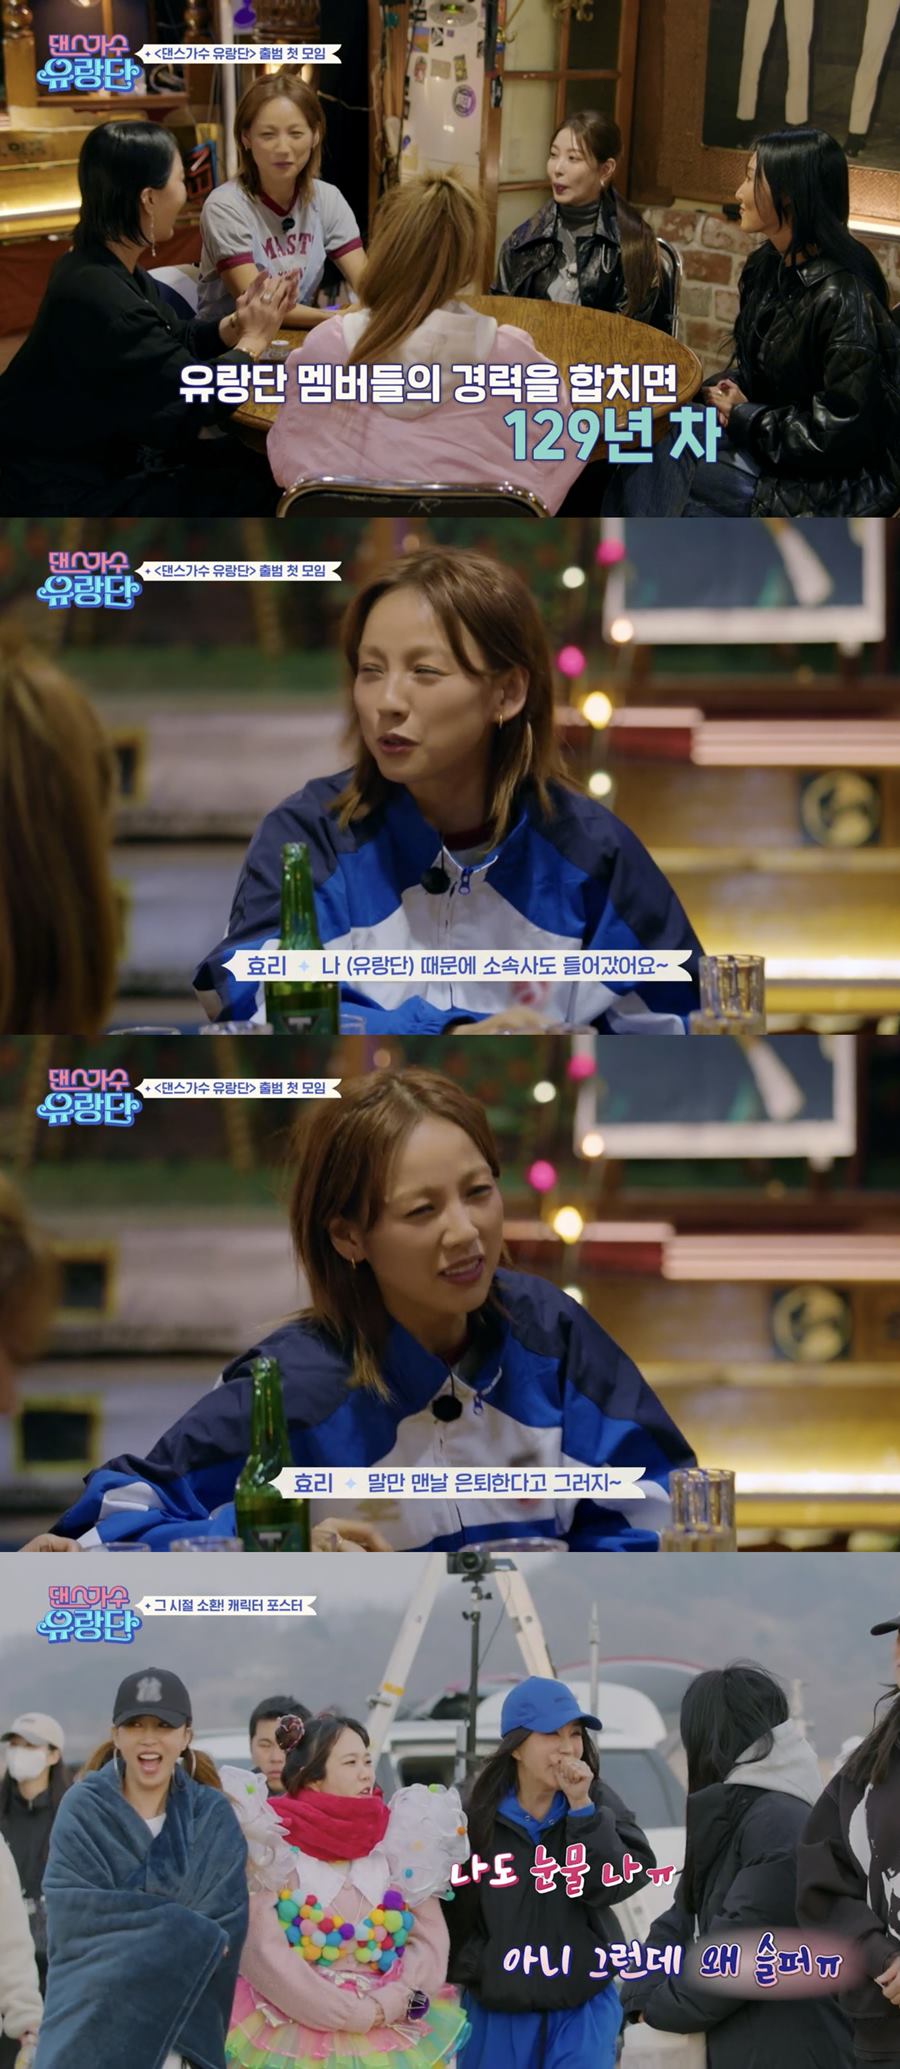 ▲ tvN 예능 프로그램 '댄스가수 유랑단'. 출처| '댄스가수 유랑단' 방송화면 캡처